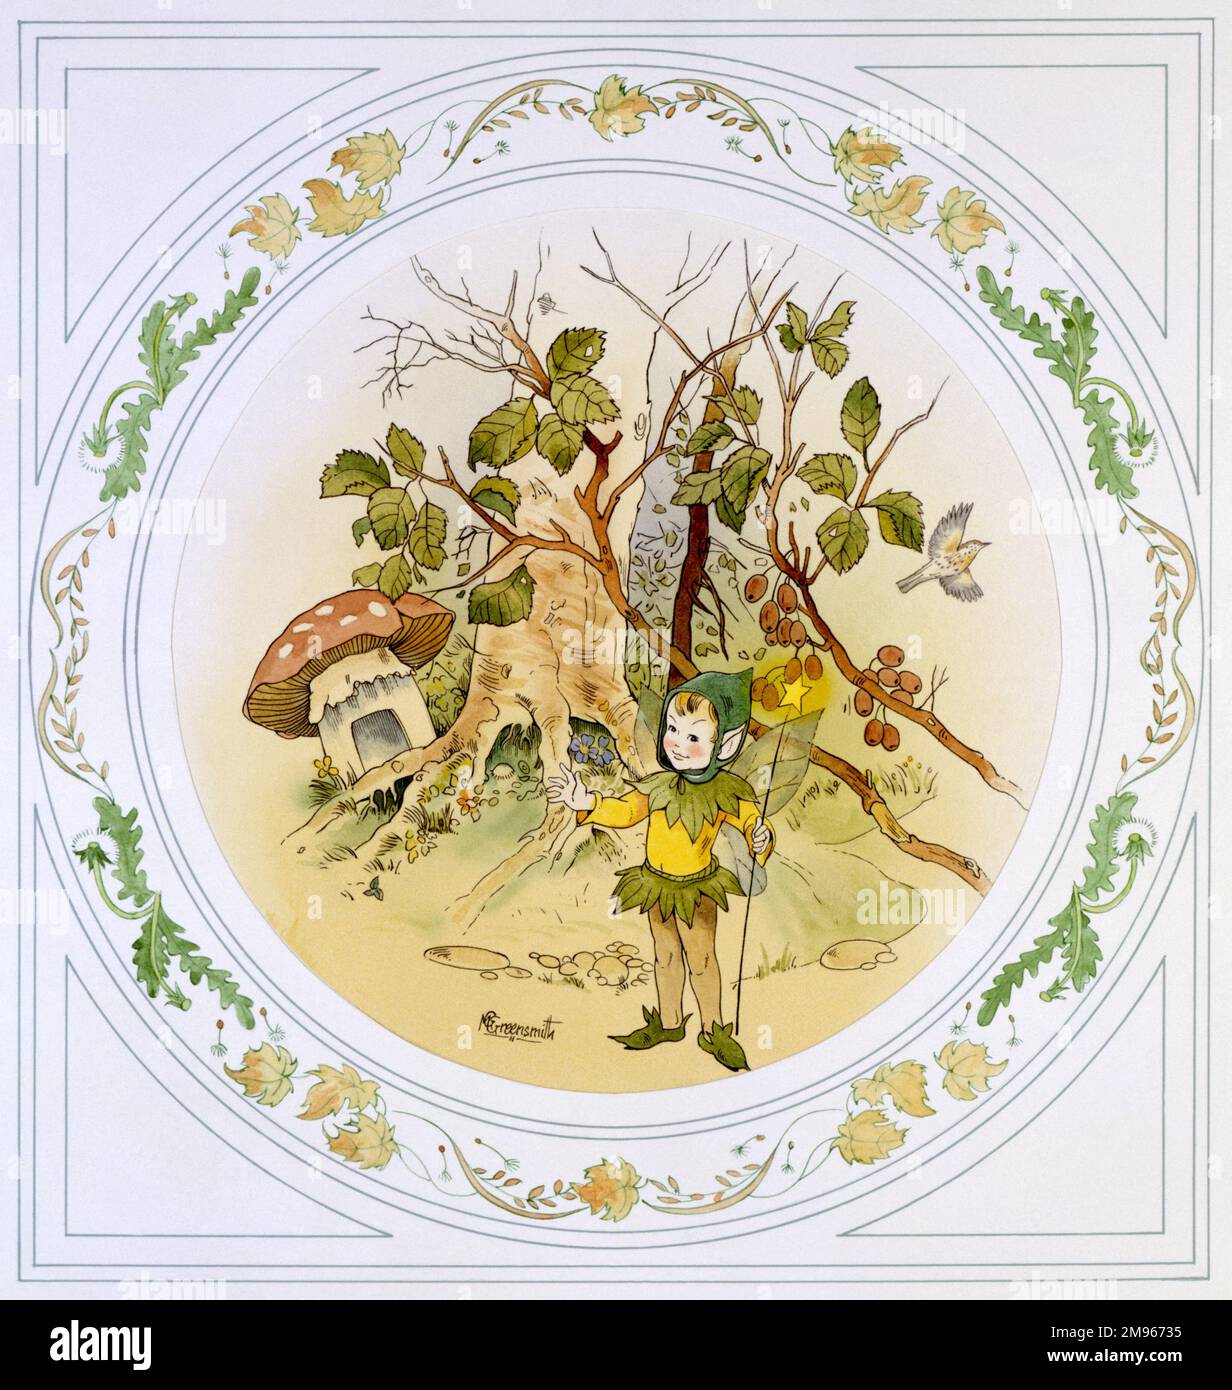 Eine junge elfen-Sprite, die im Unterholz in der Nähe eines gesprenkelten Kehlhockers steht. Aquarellmalerei von Malcolm Greensmith mit kreisförmigem Rand Stockfoto